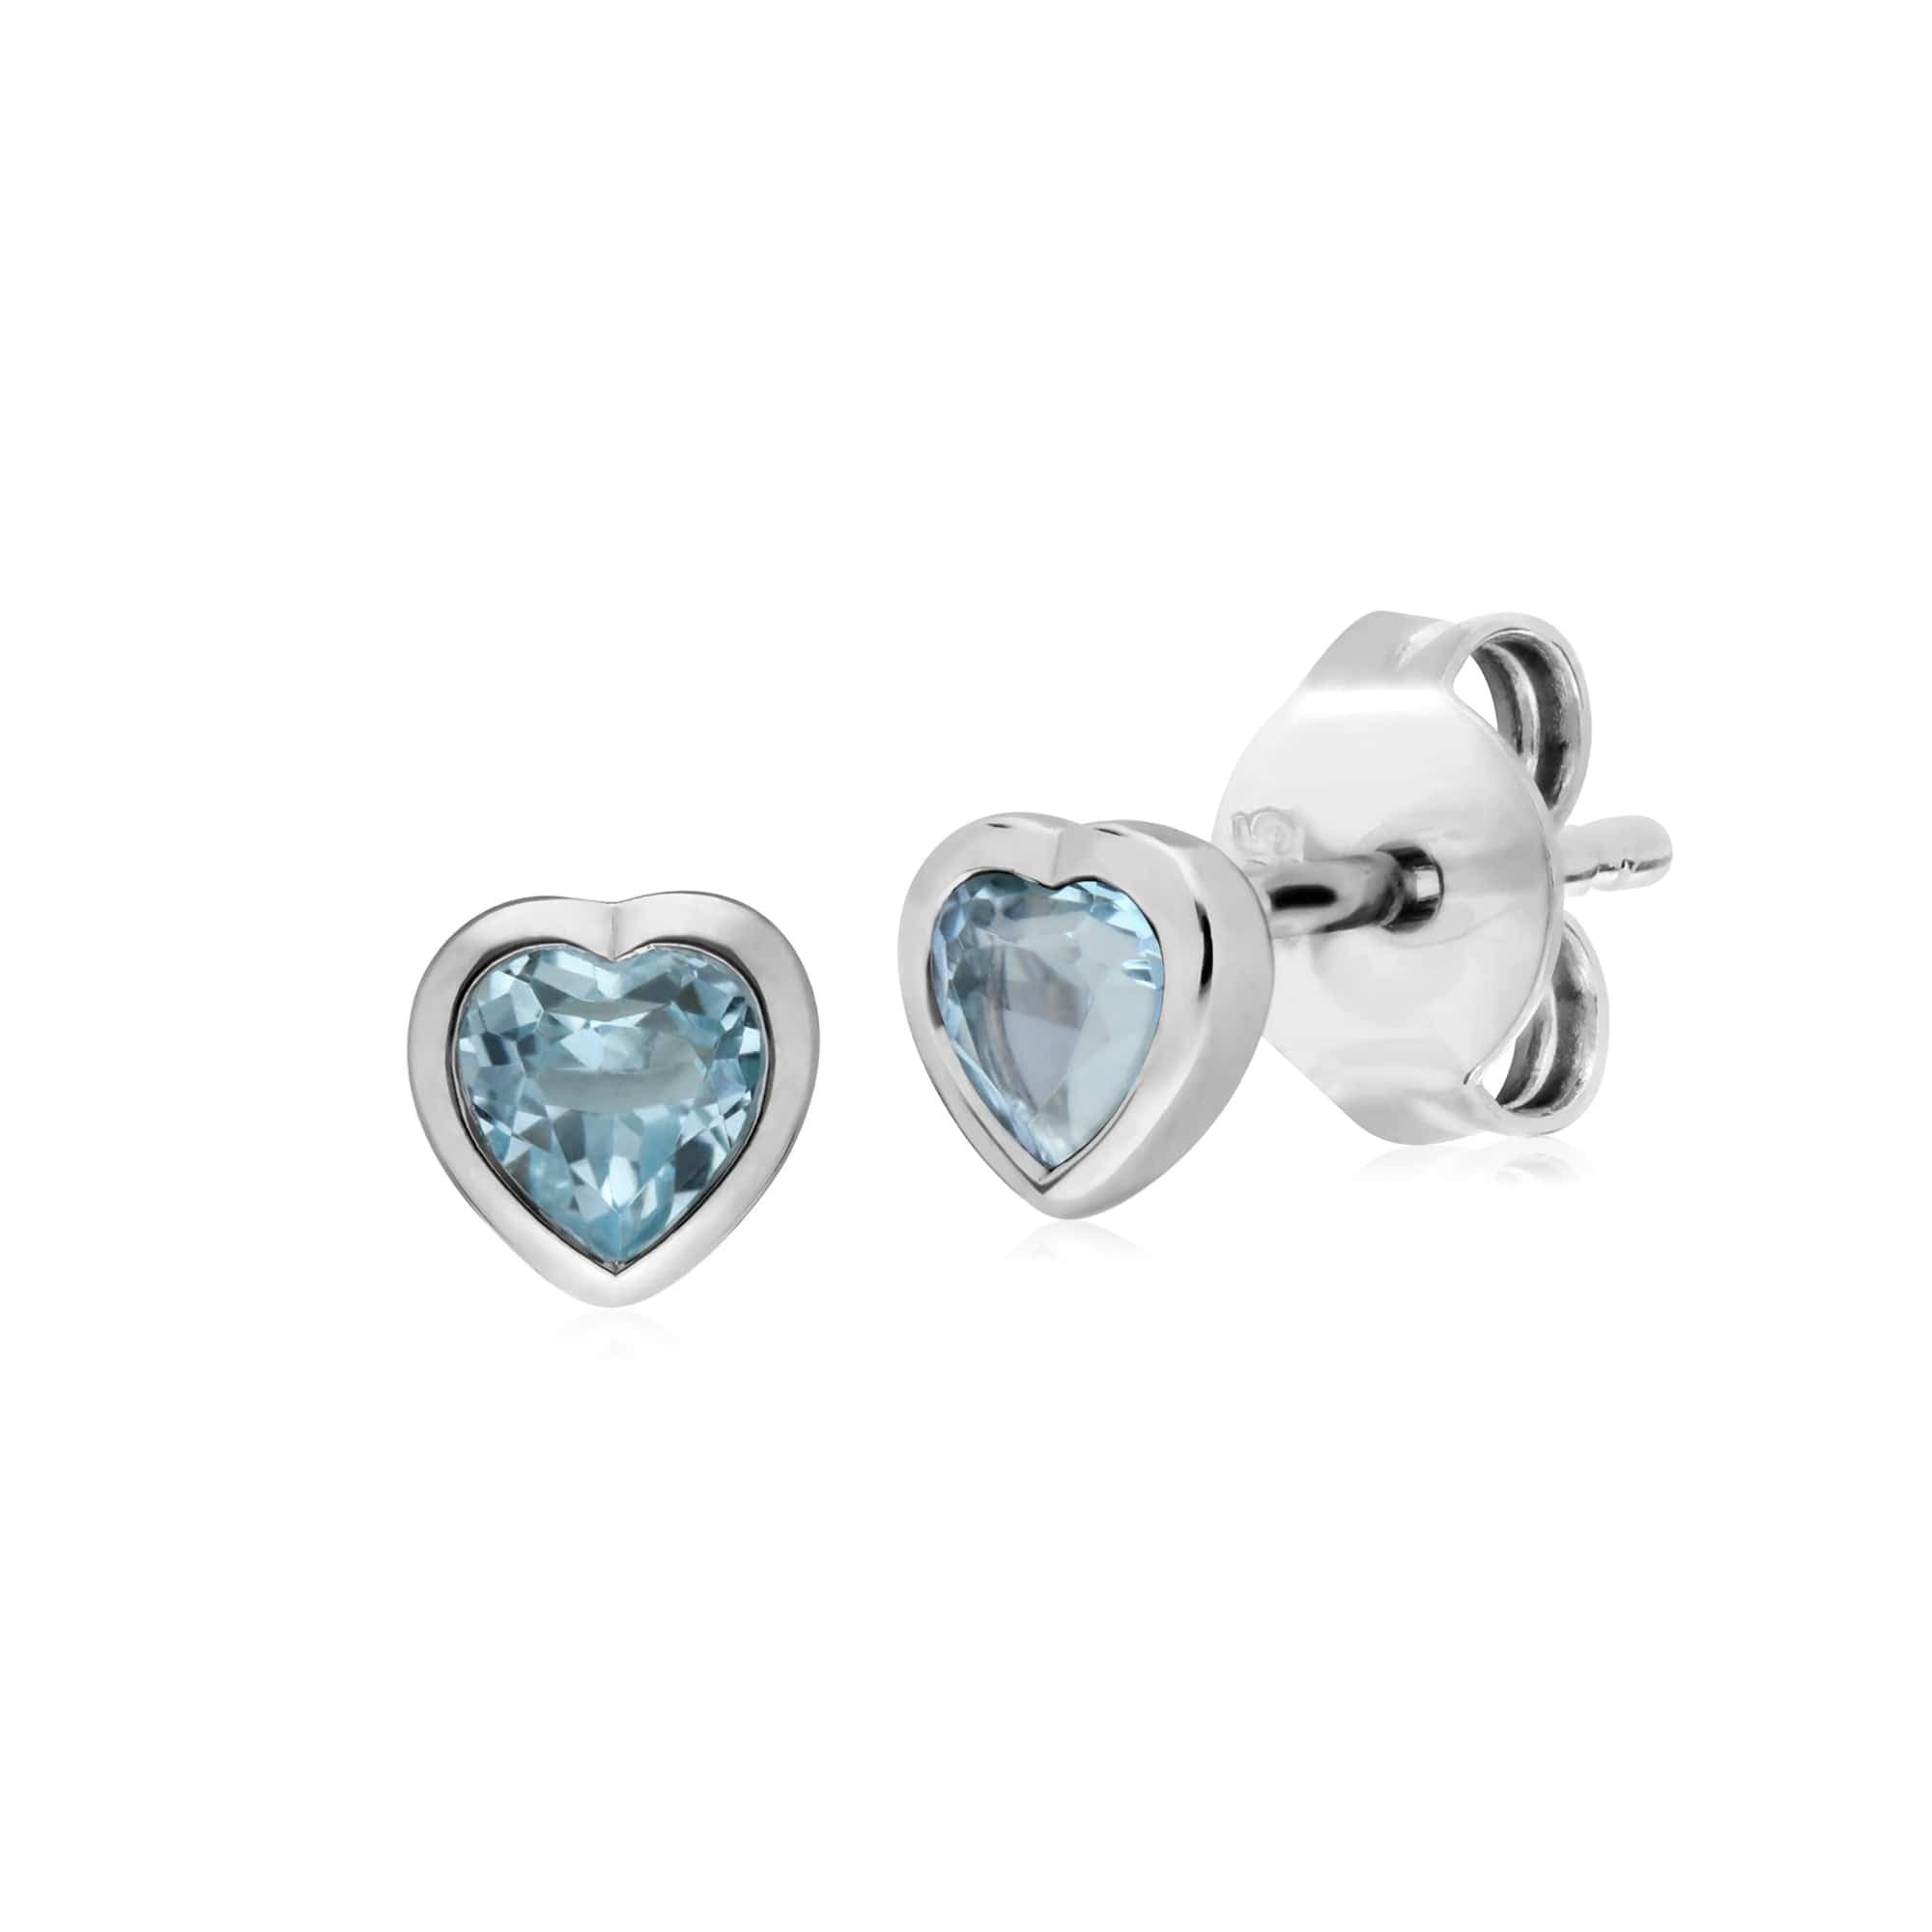 270E026102925-270P028702925 Classic Heart Blue Topaz Stud Earrings & Pendant Set in 925 Sterling Silver 2